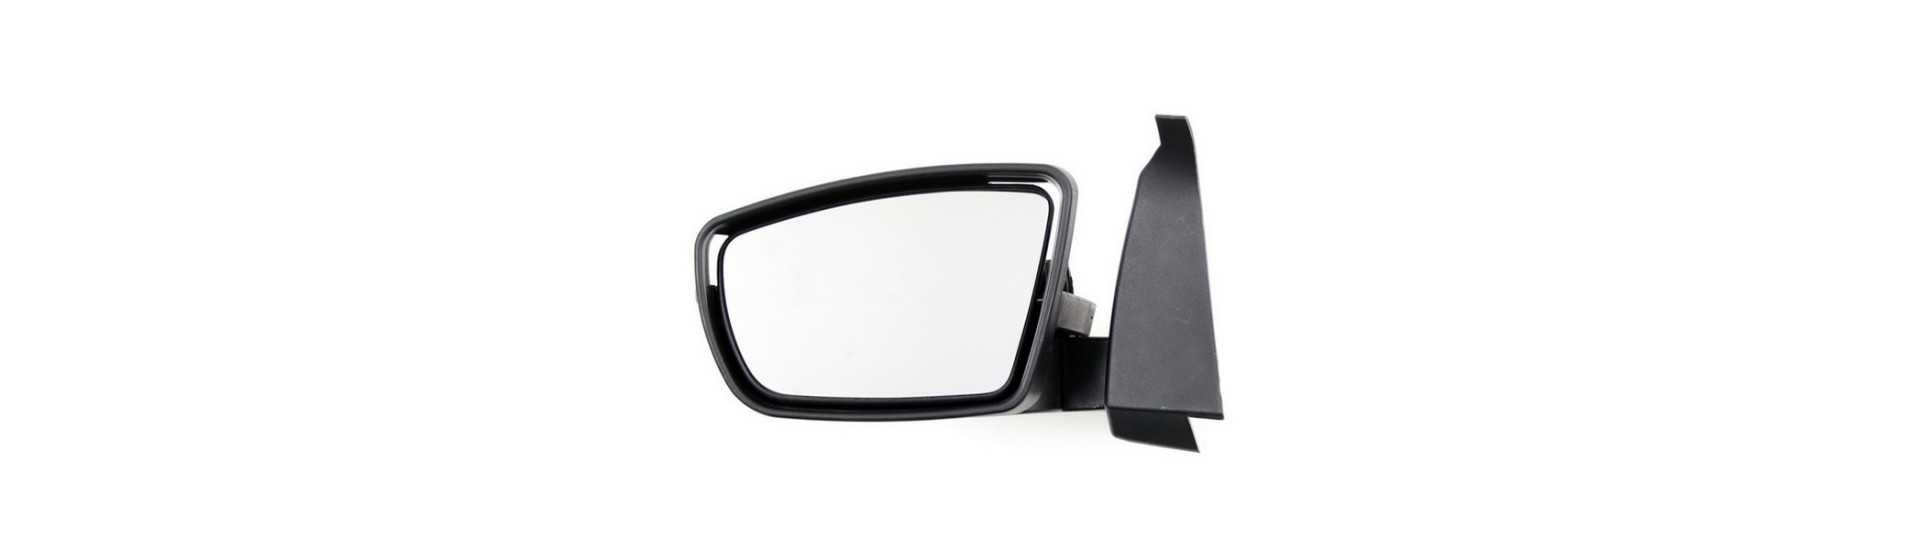 Retrovizor și oglindă pentru mașină fără permis